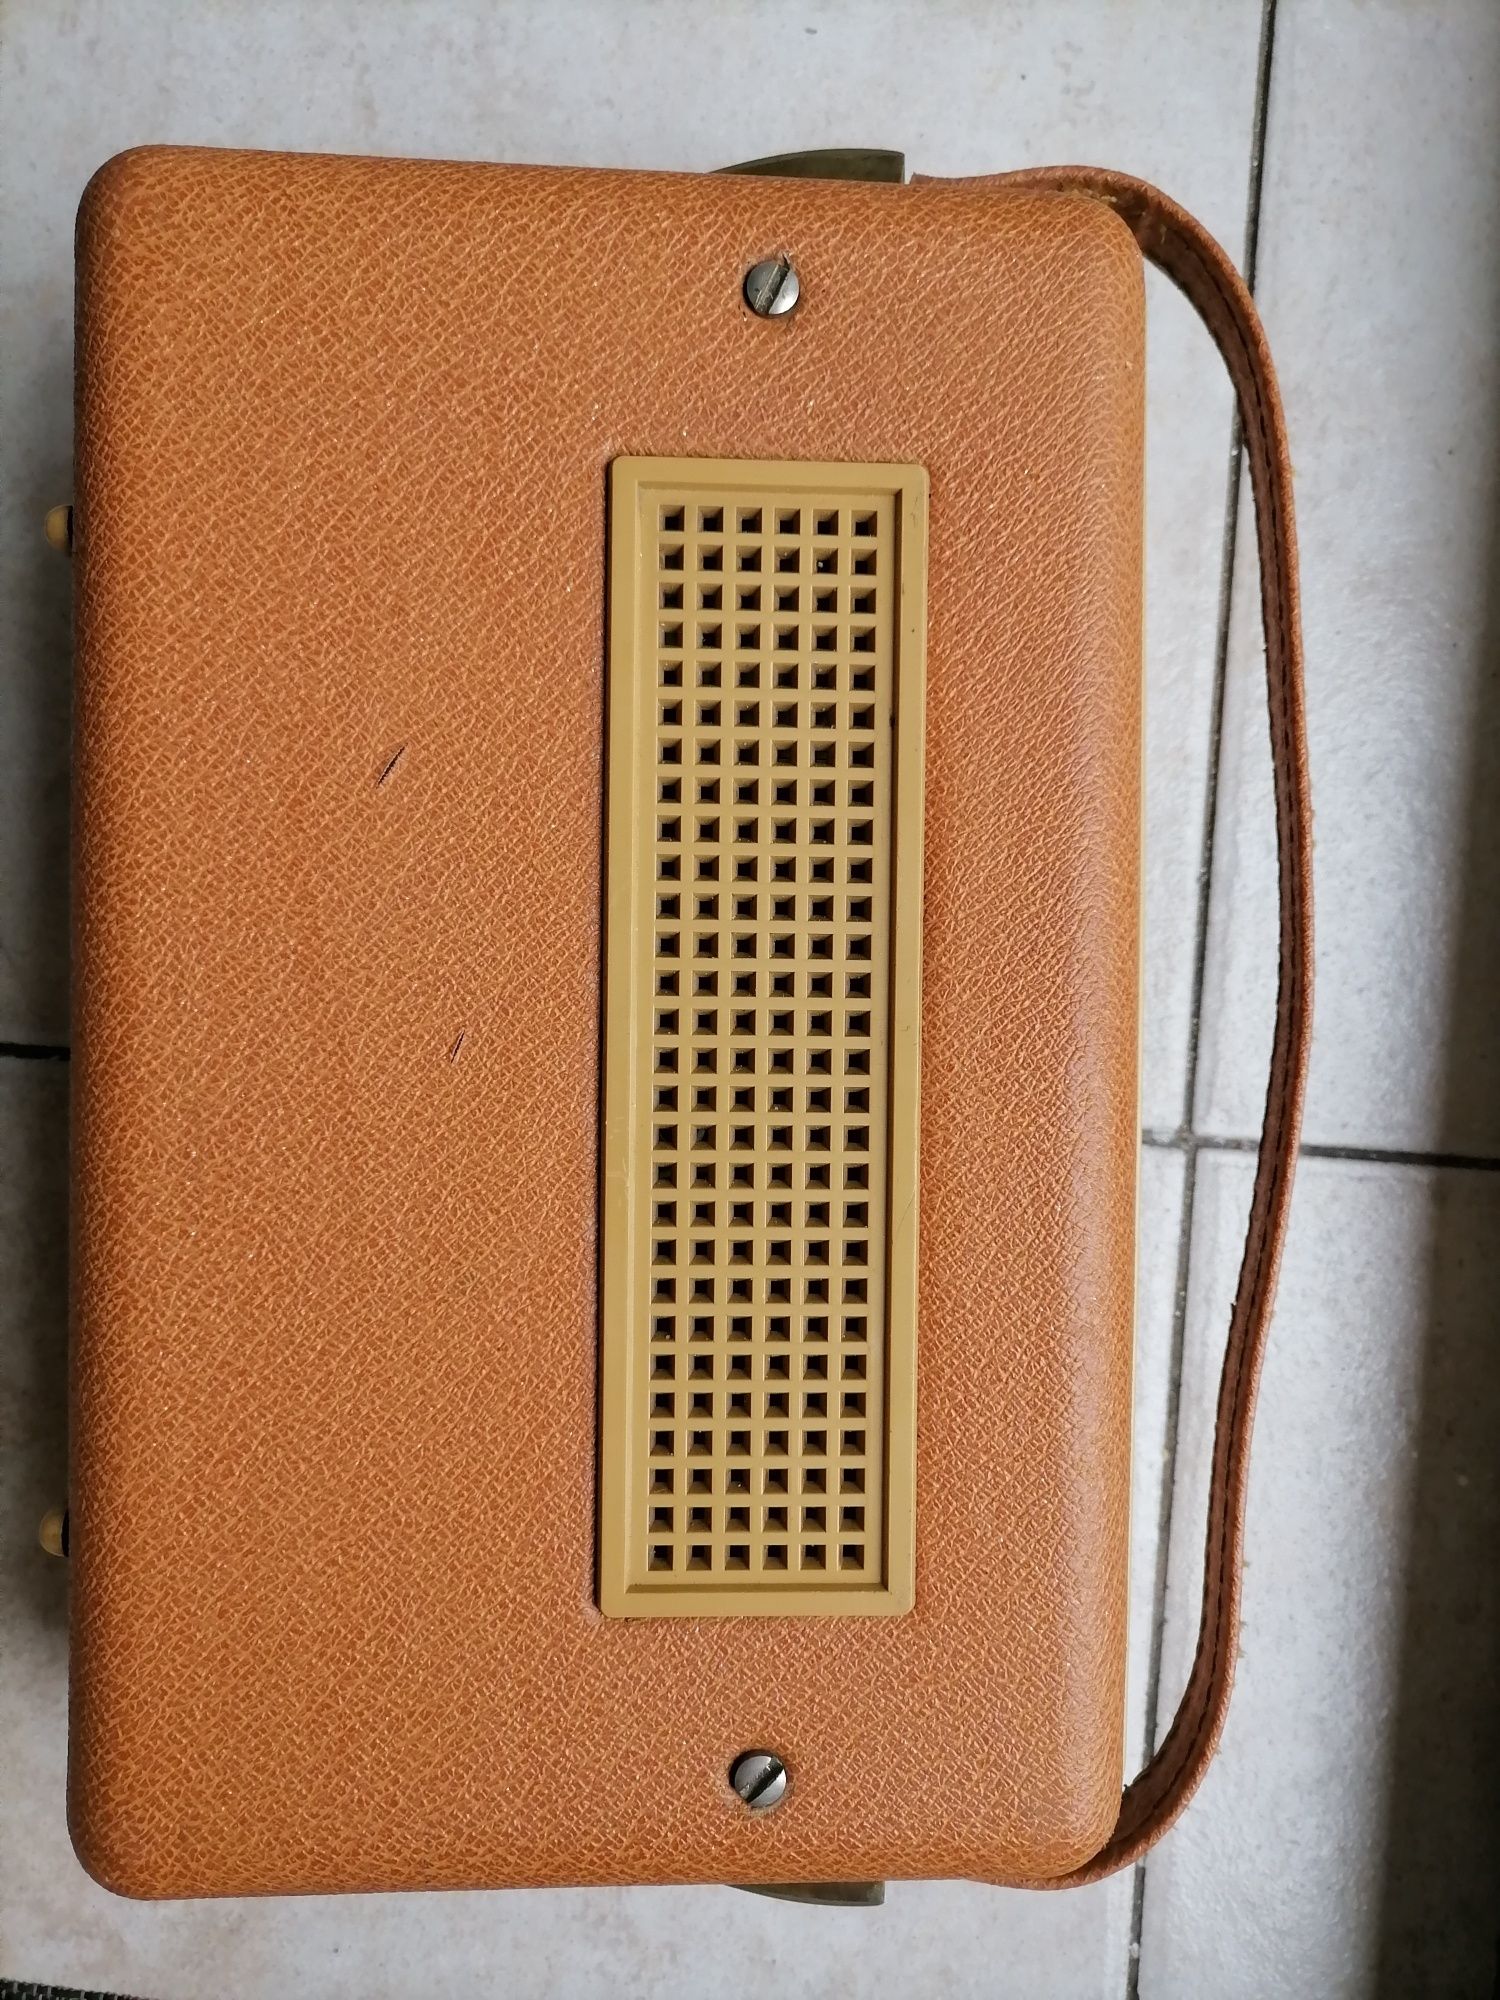 Kolekcjonerskie radio tranzystorowe z lat 60 tych